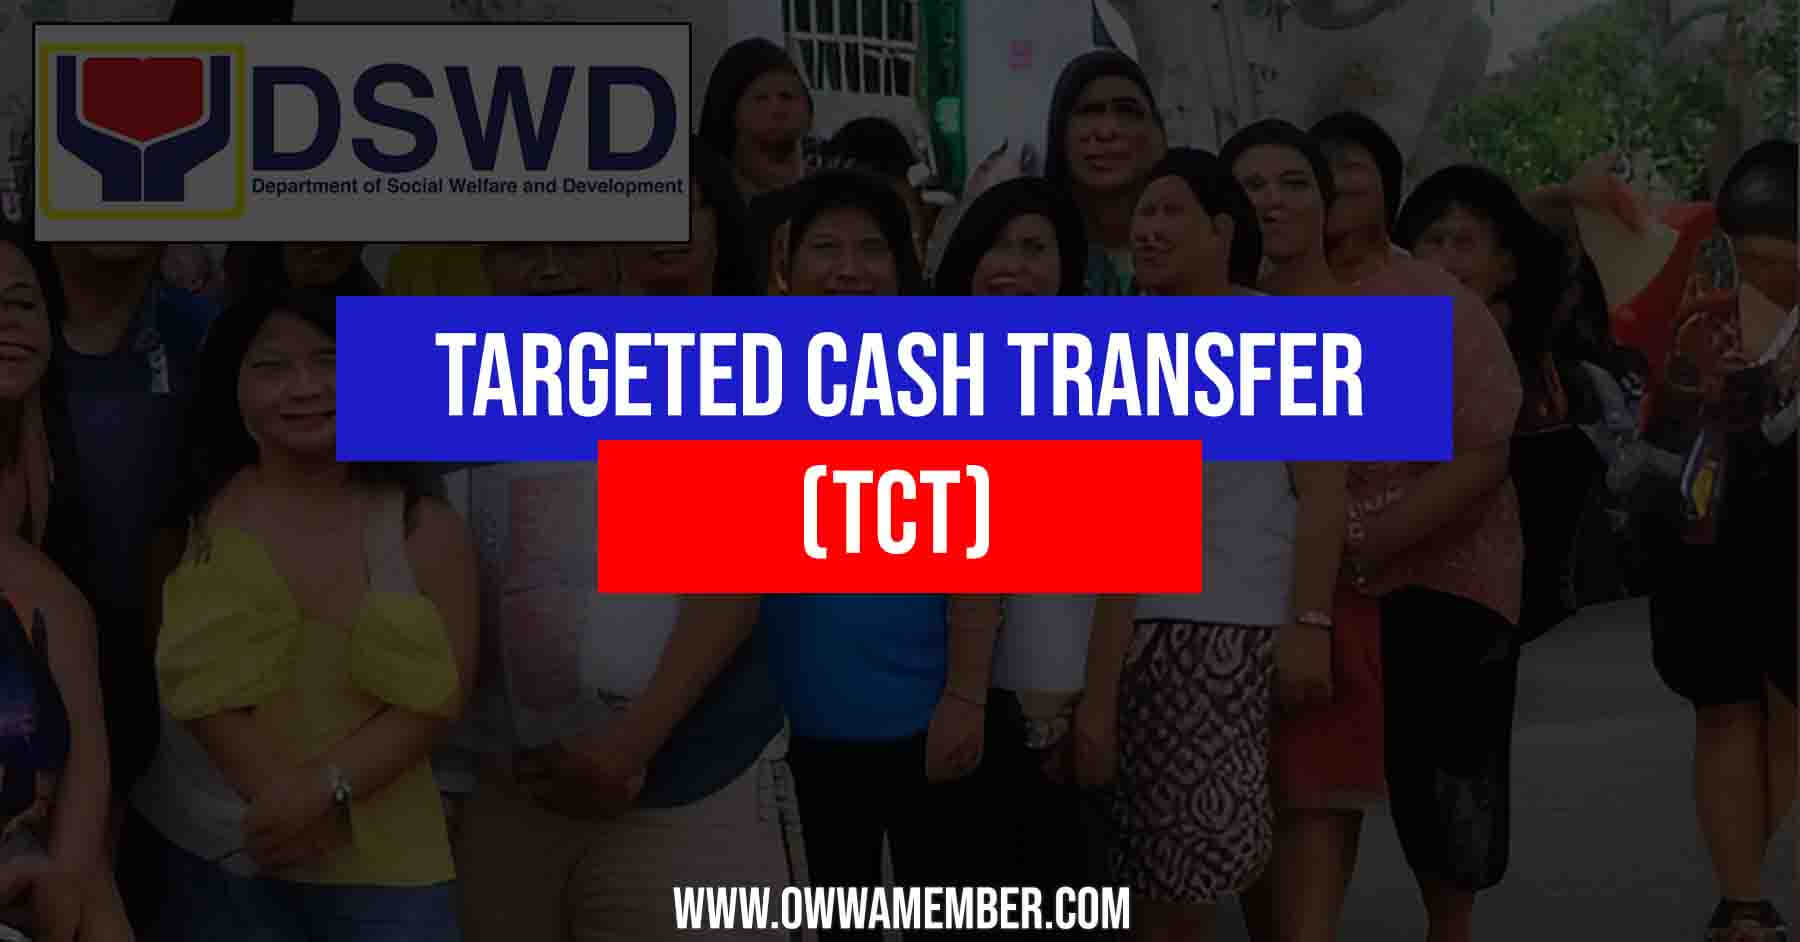 dswd targeted cash transfer program